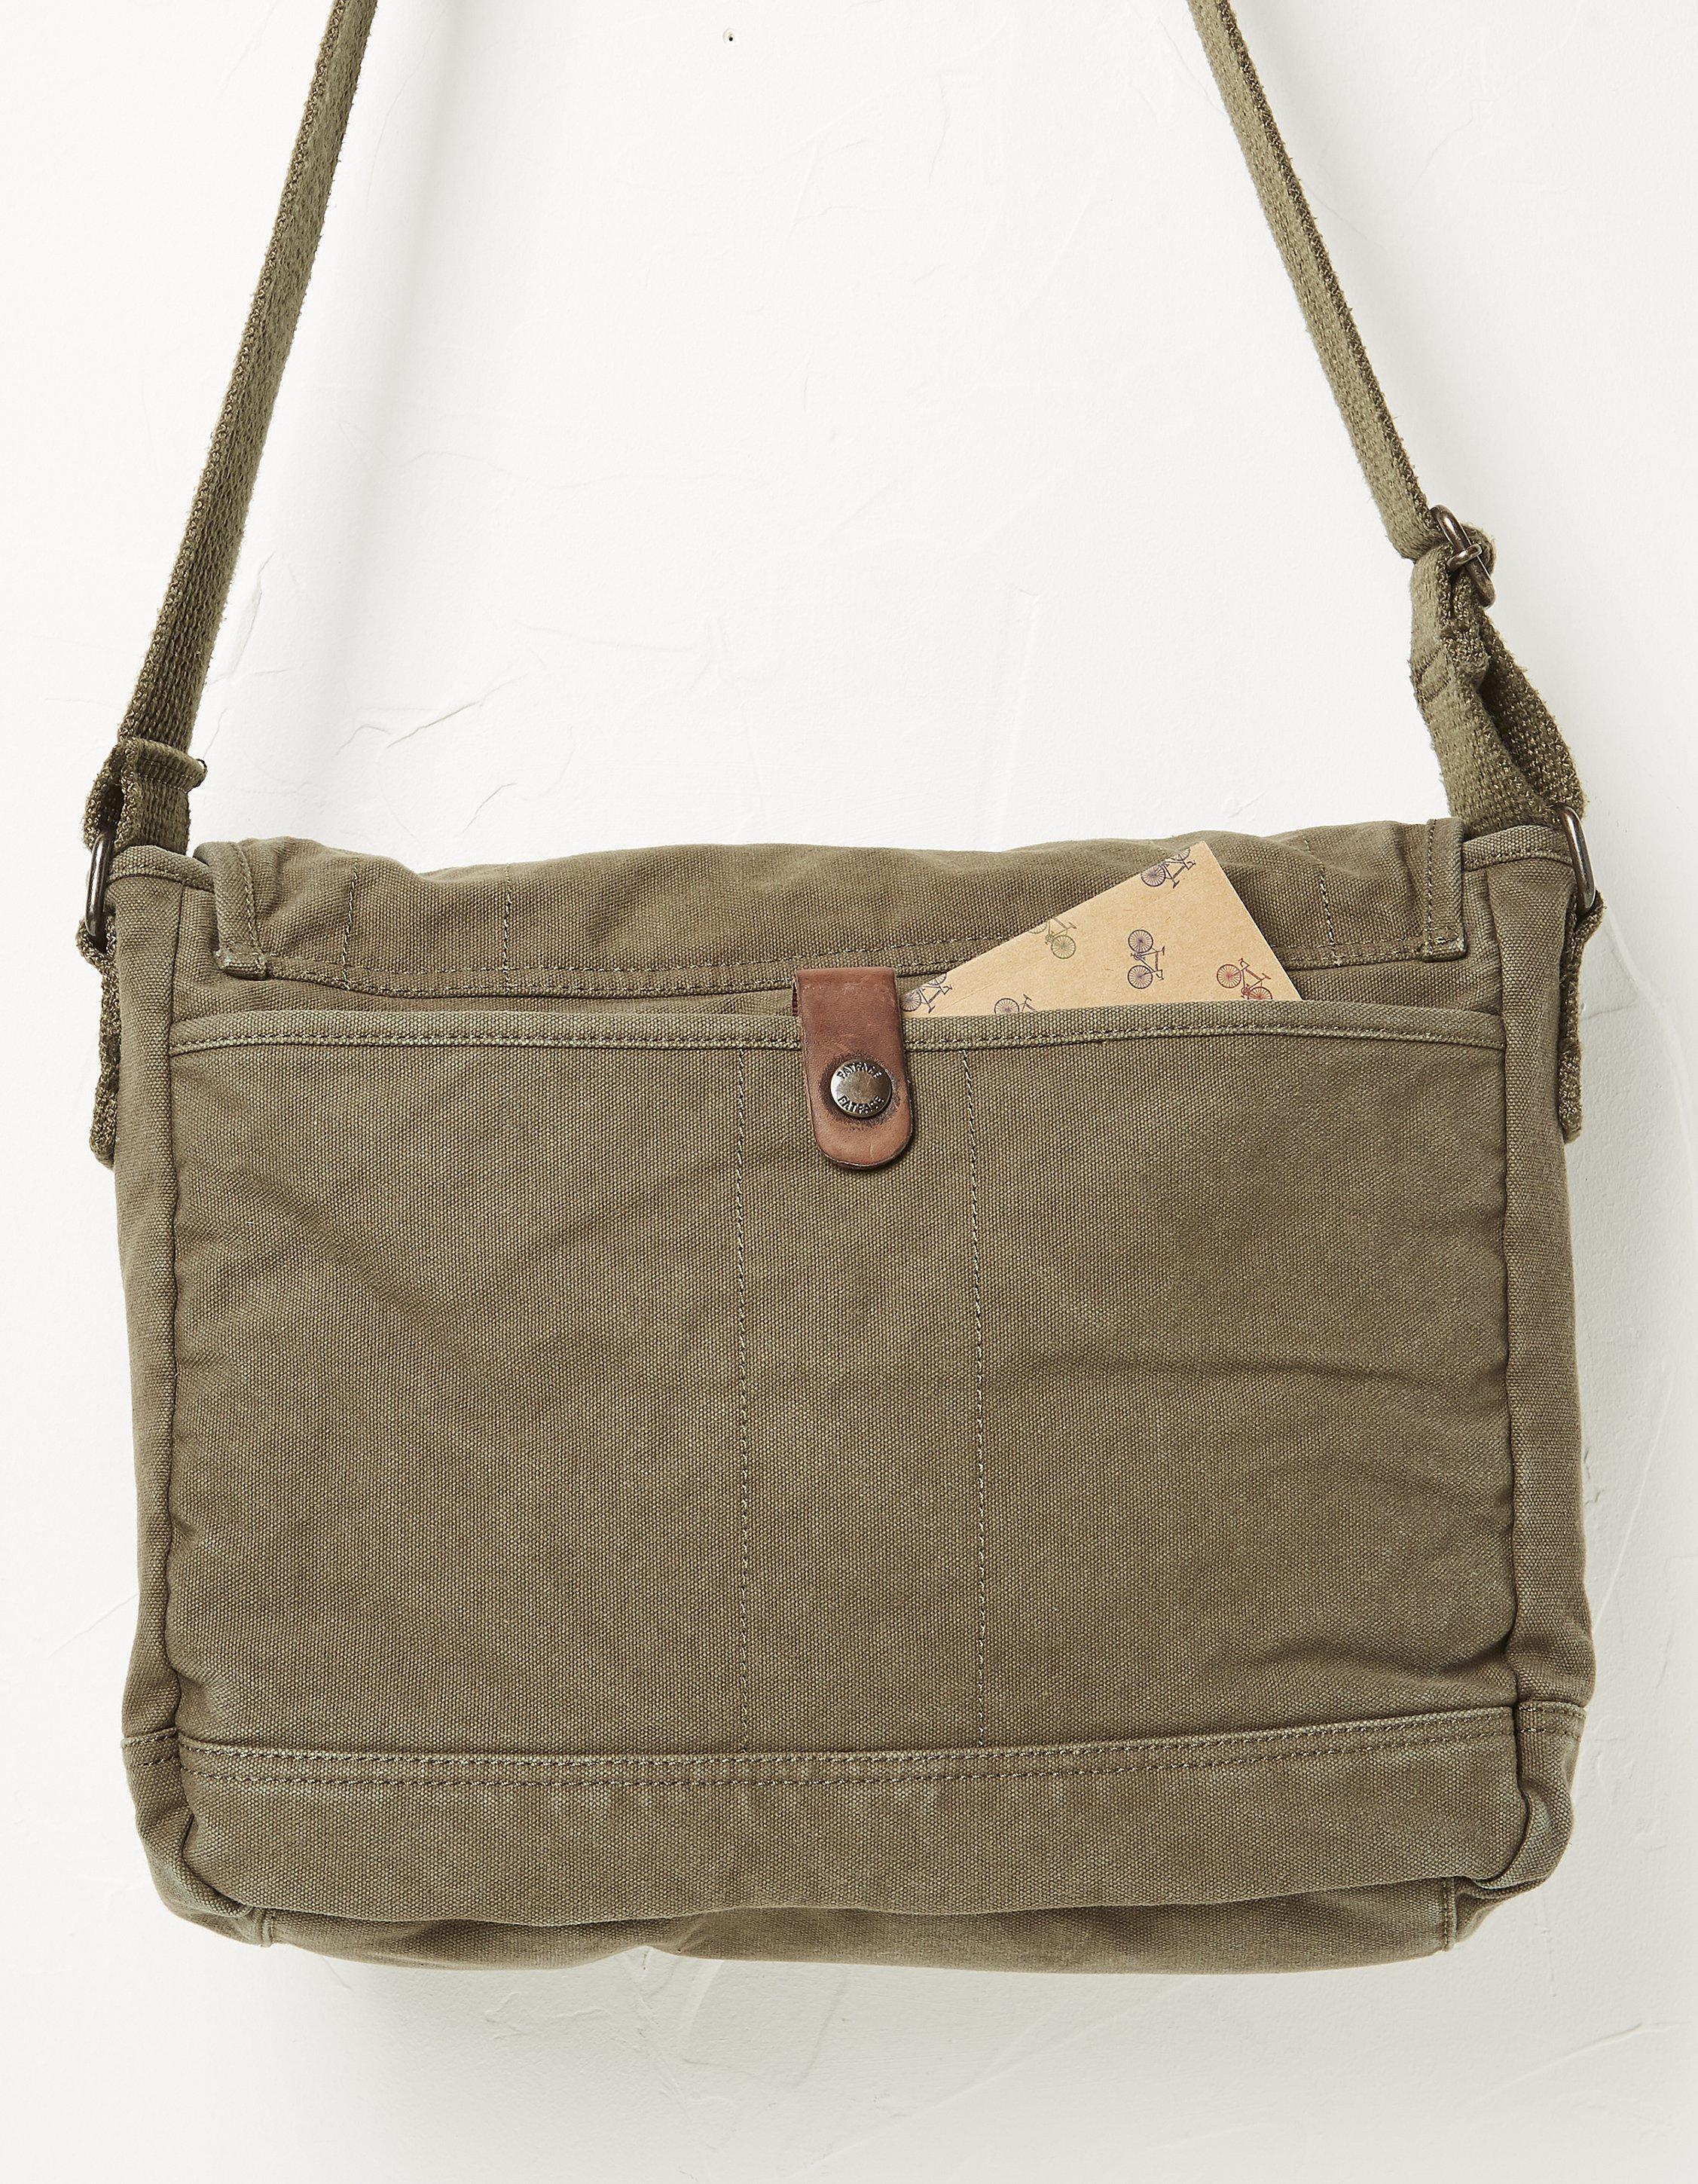 [Upgraded] Vintage Canvas Messenger Bag Large Book Laptop Shoulder Bag  Women Men New